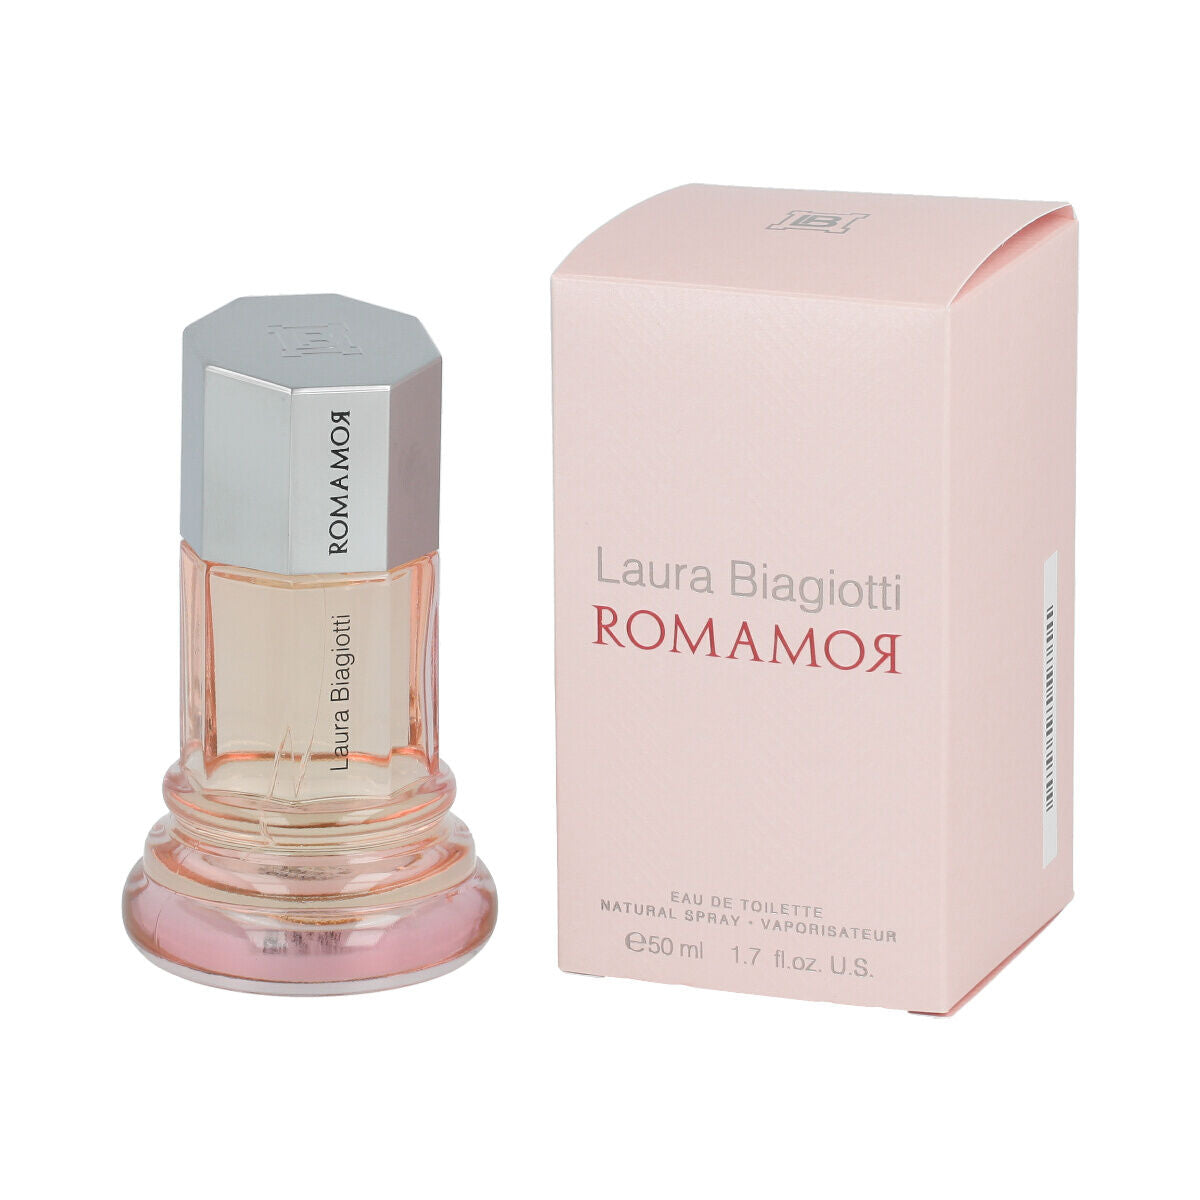 Perfume de femmes Laura Biagiotti Edt Romamor 50 ml